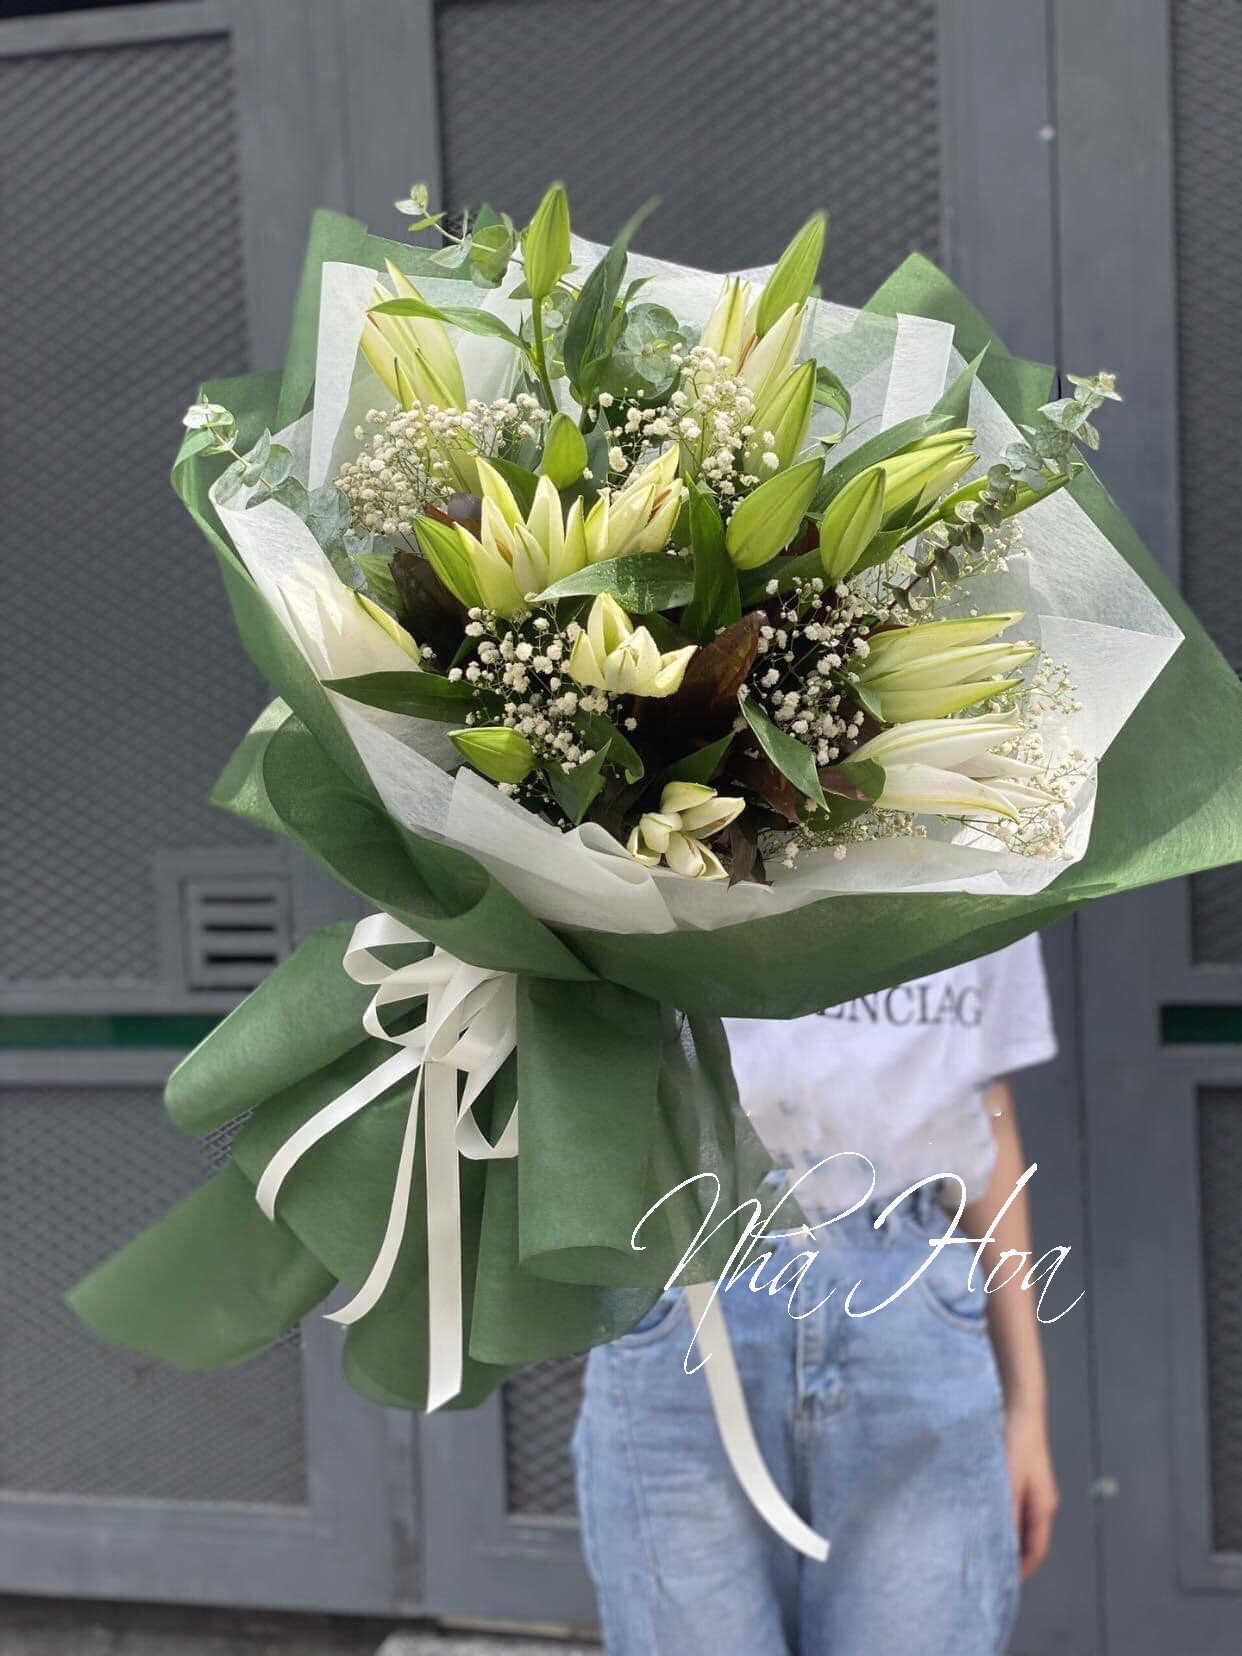 Mua hoa tươi giá rẻ ở đâu tại Hồ Chí Minh